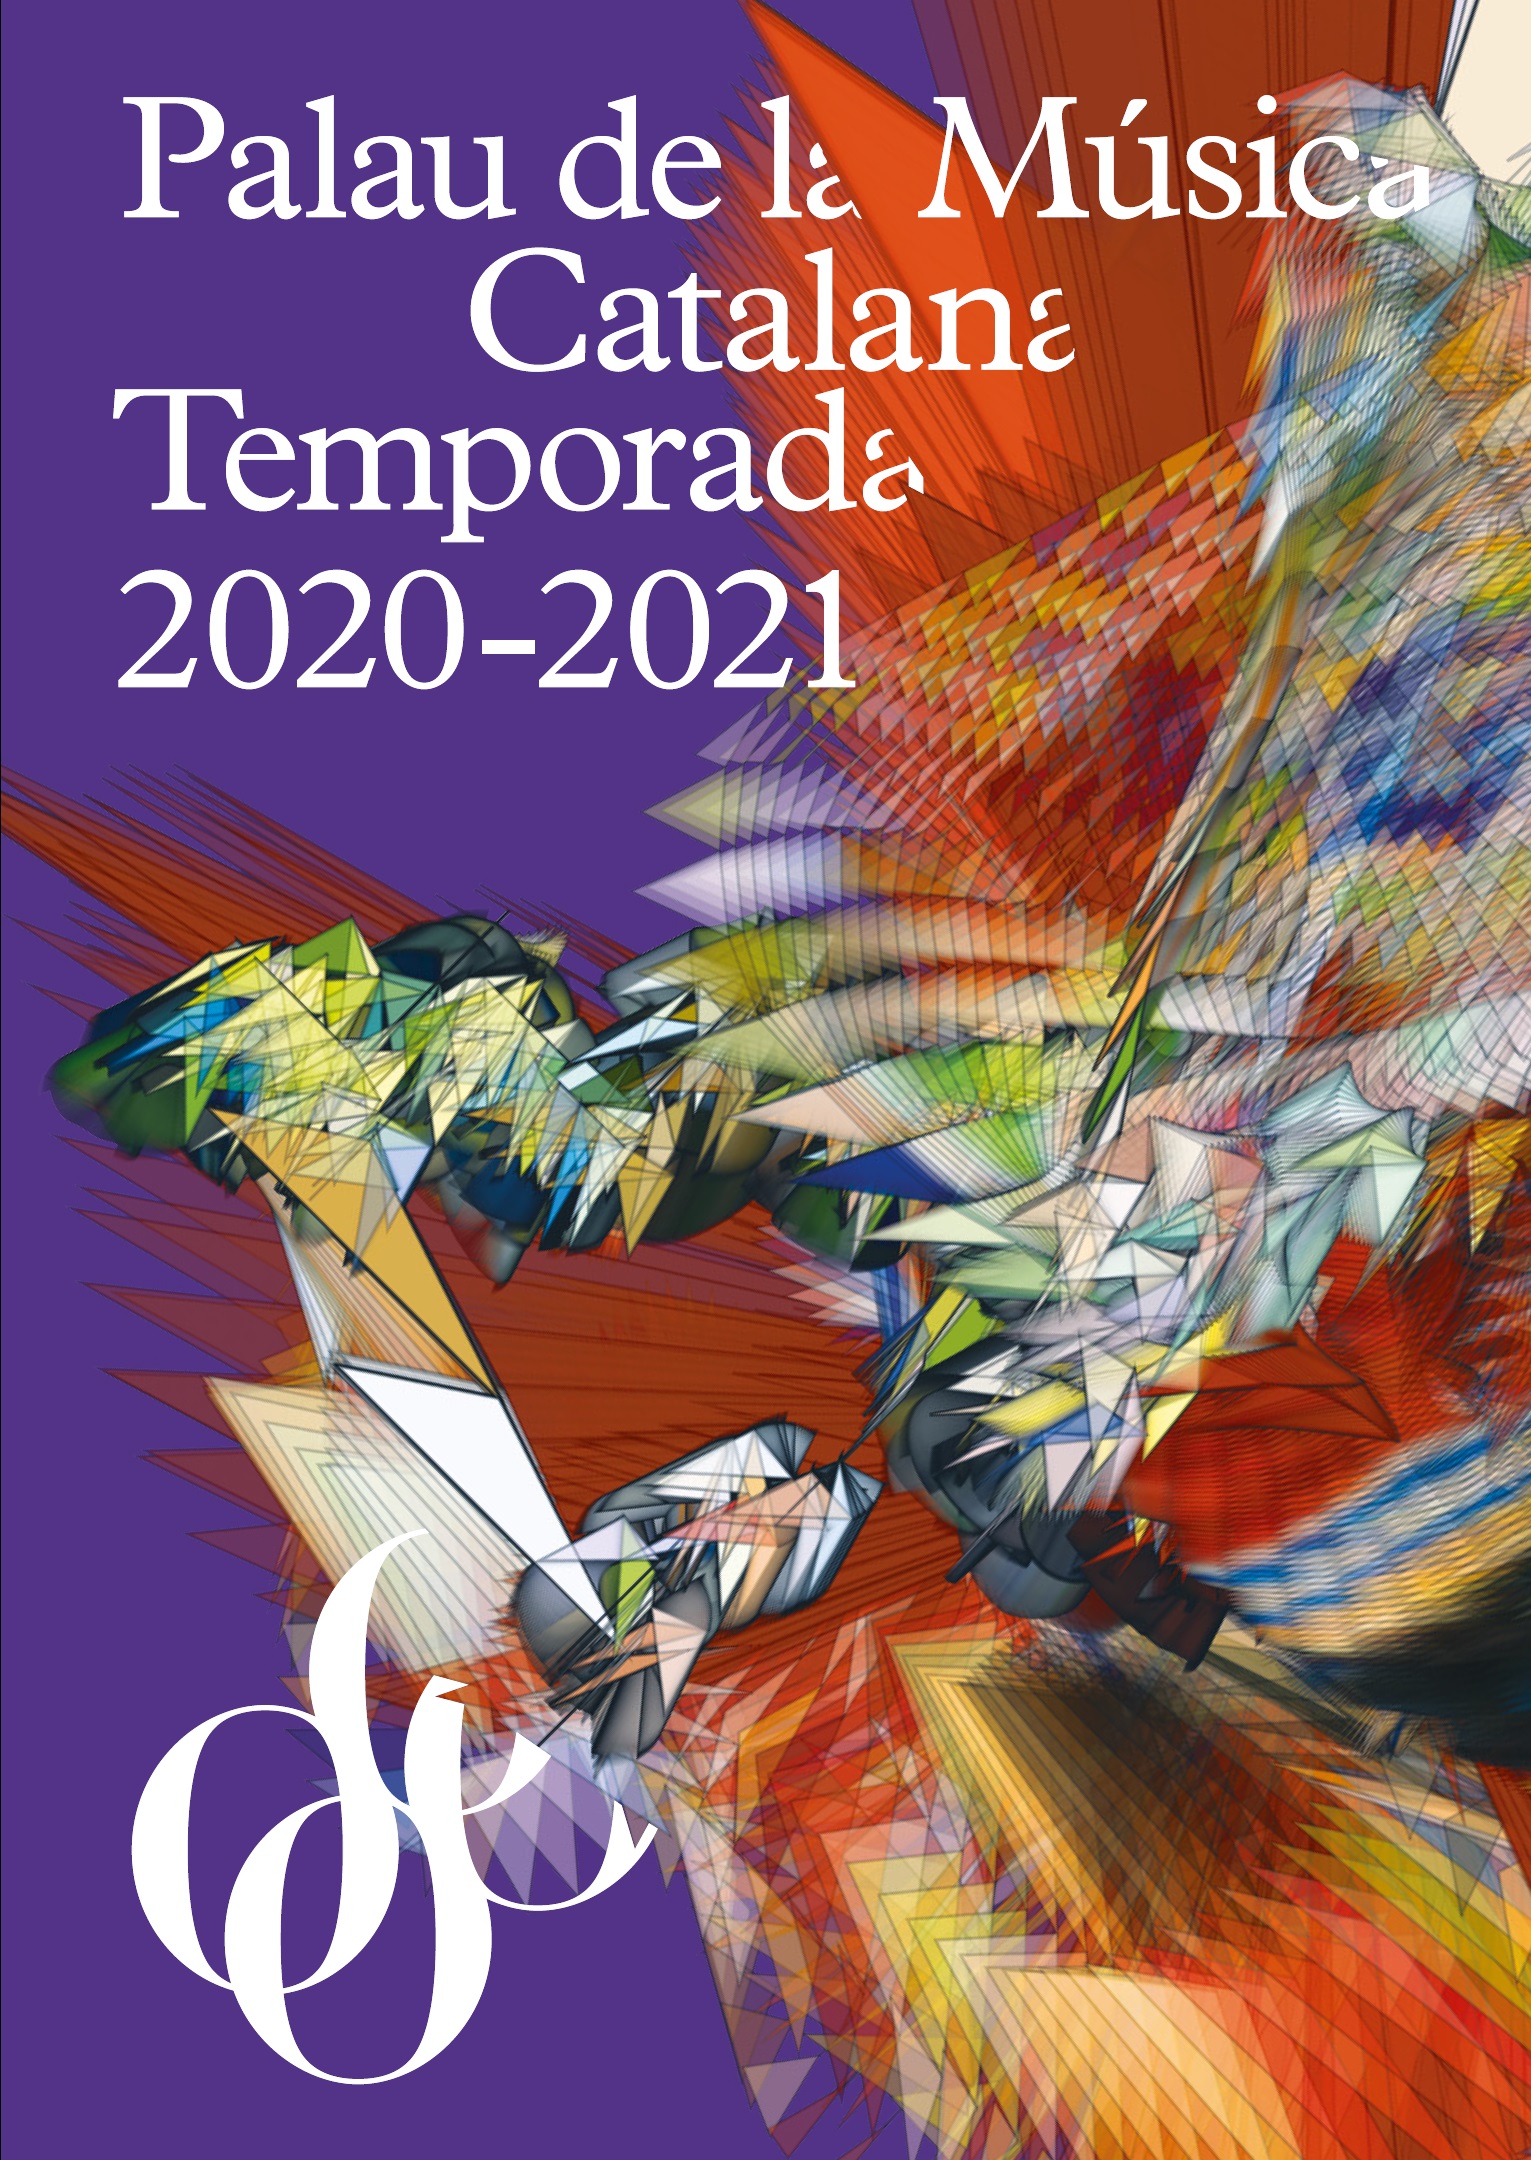 Portada programa 2020/2021 Palau de la Música Catalana